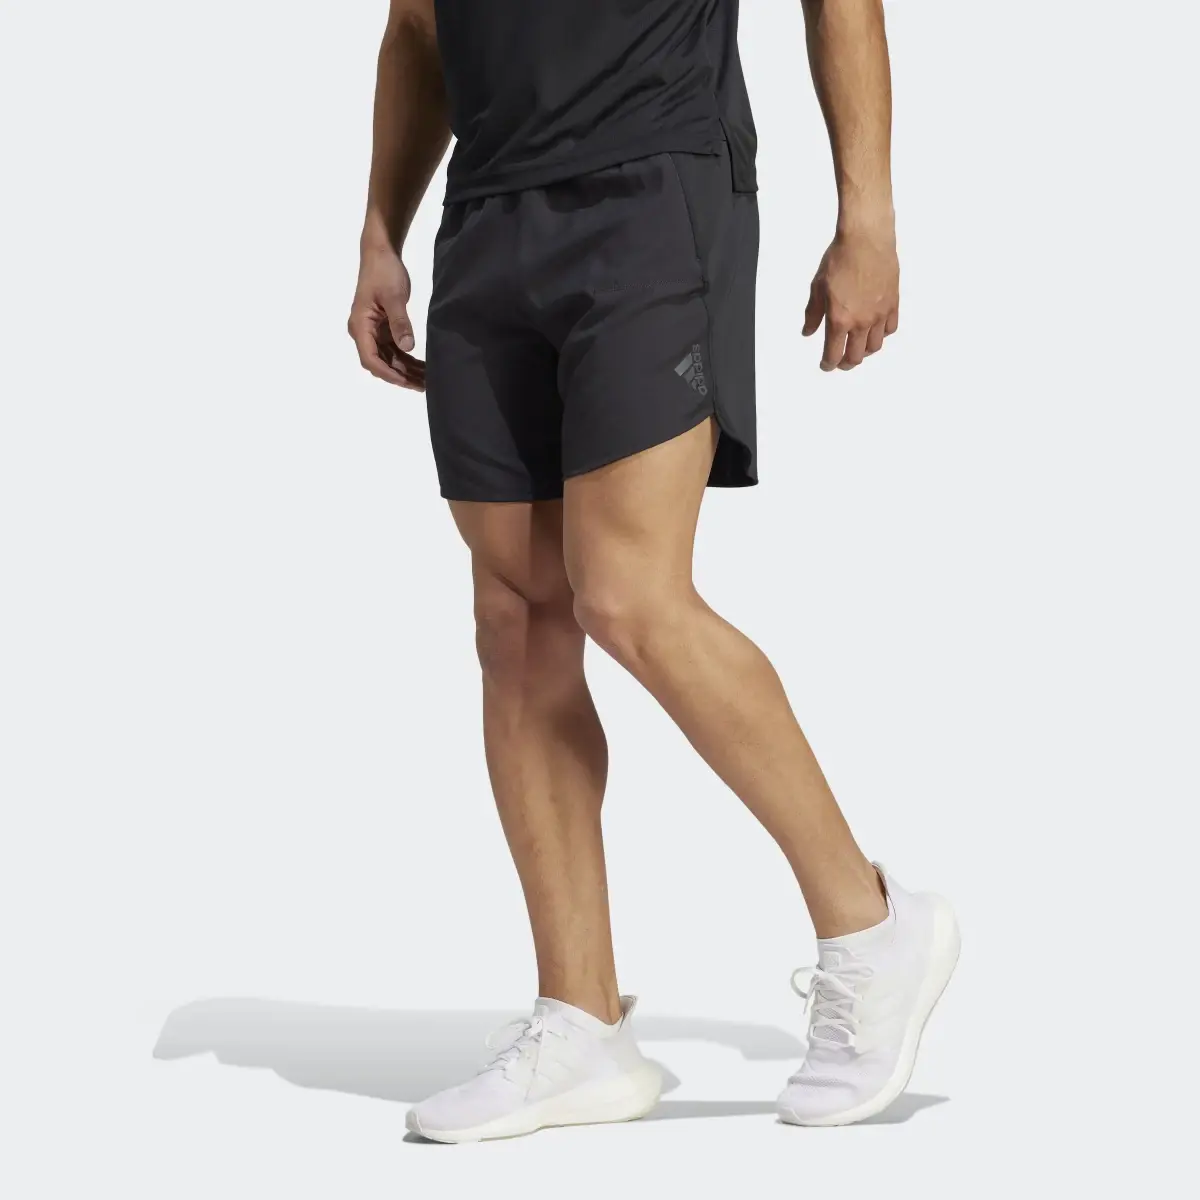 Adidas Shorts Designed for Training. 1